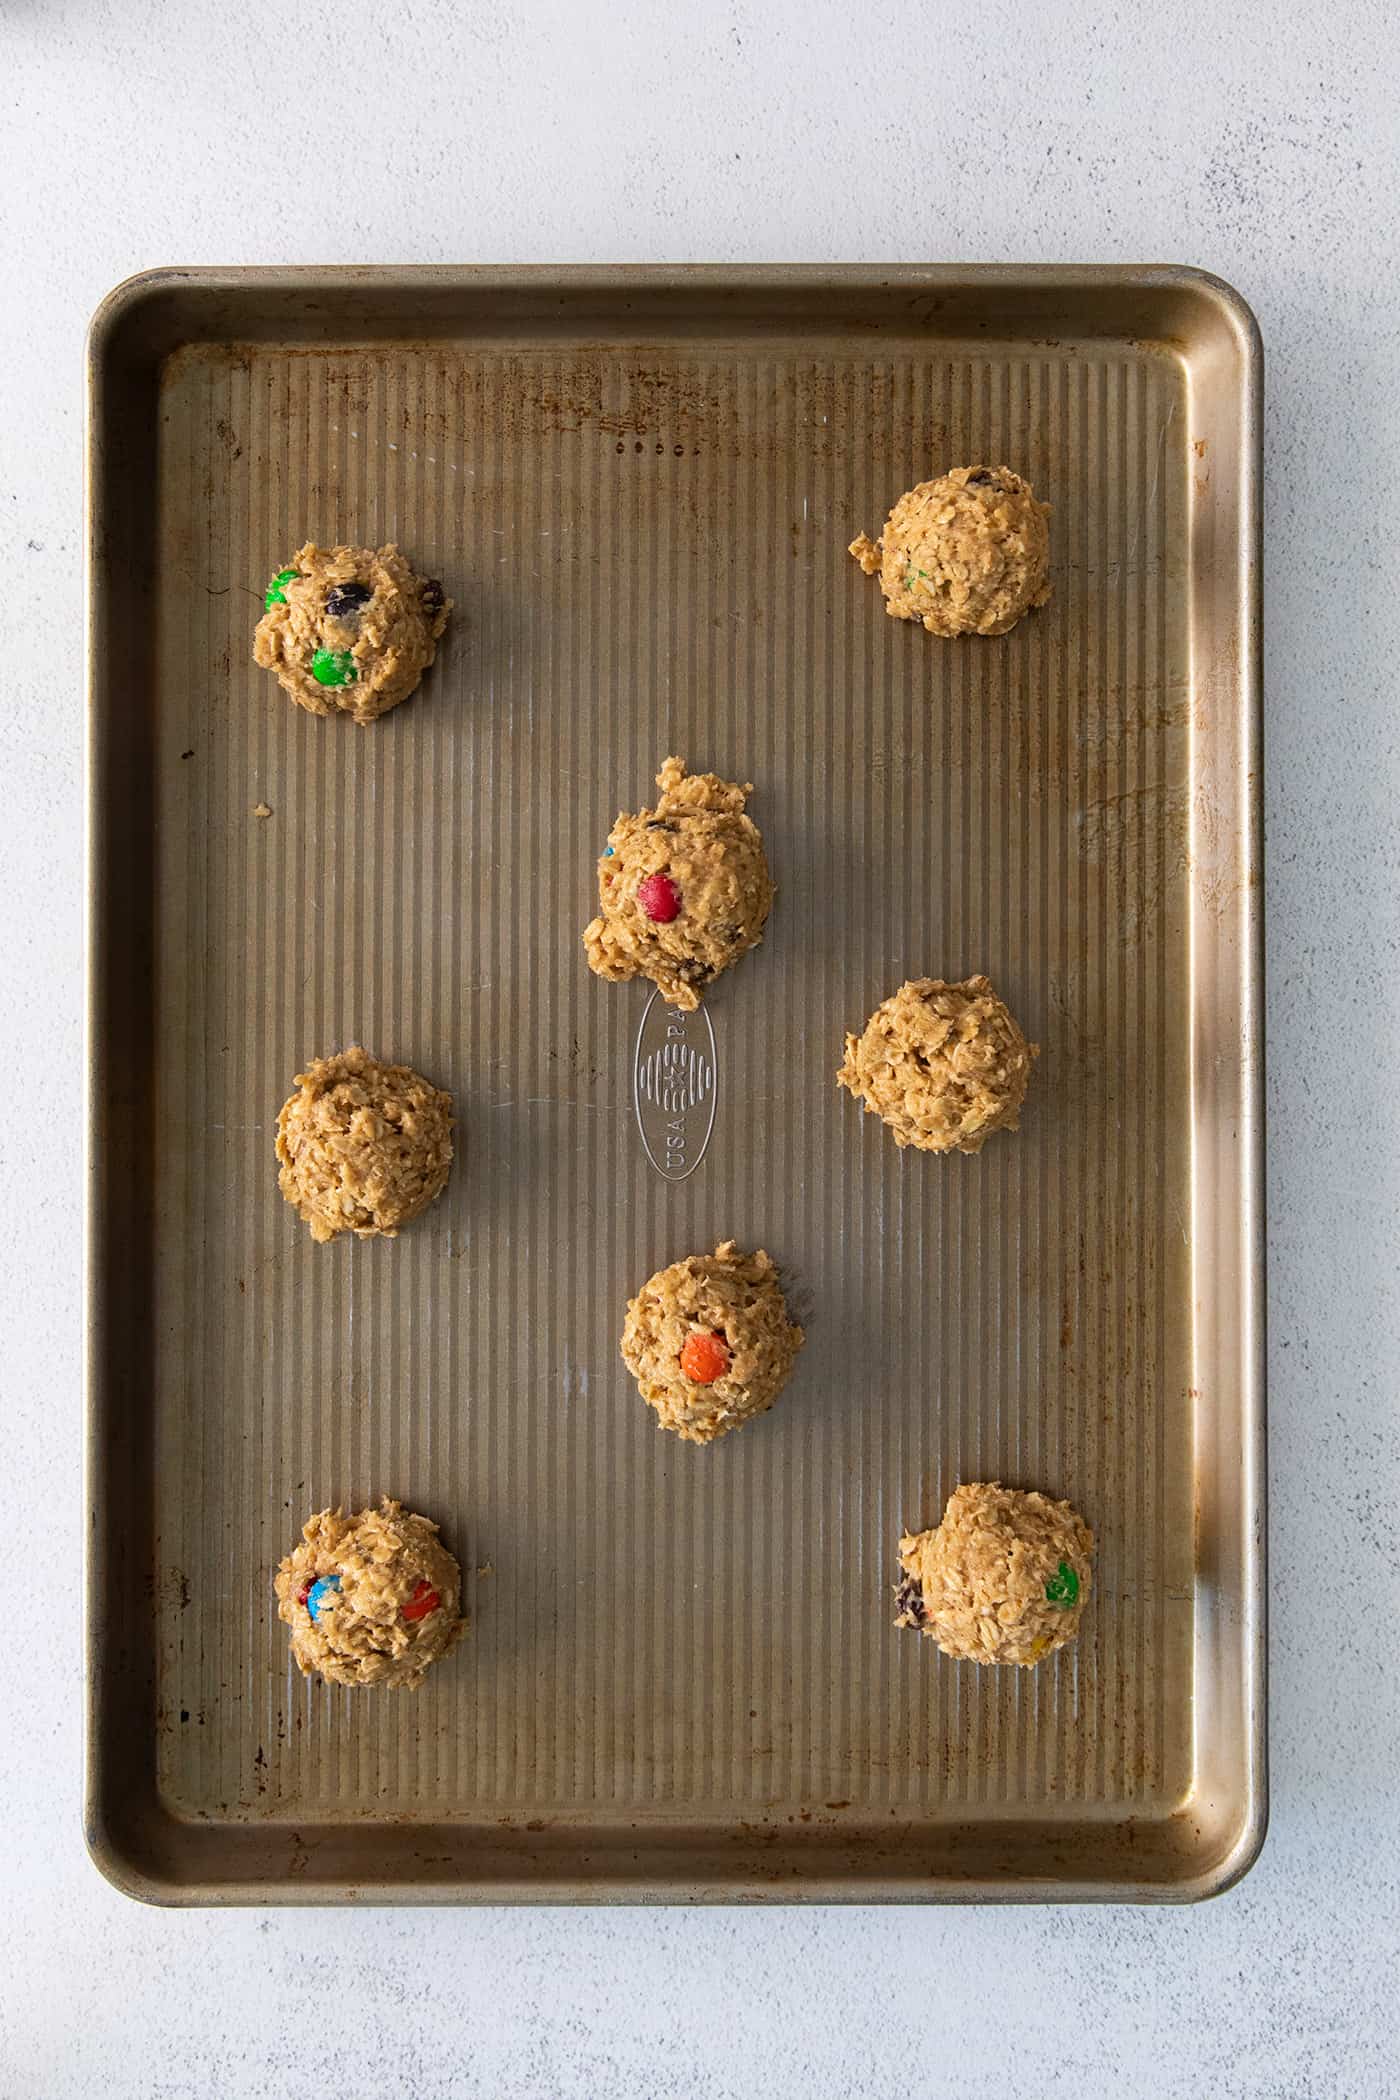 Balls of monster cookie dough on a baking sheet